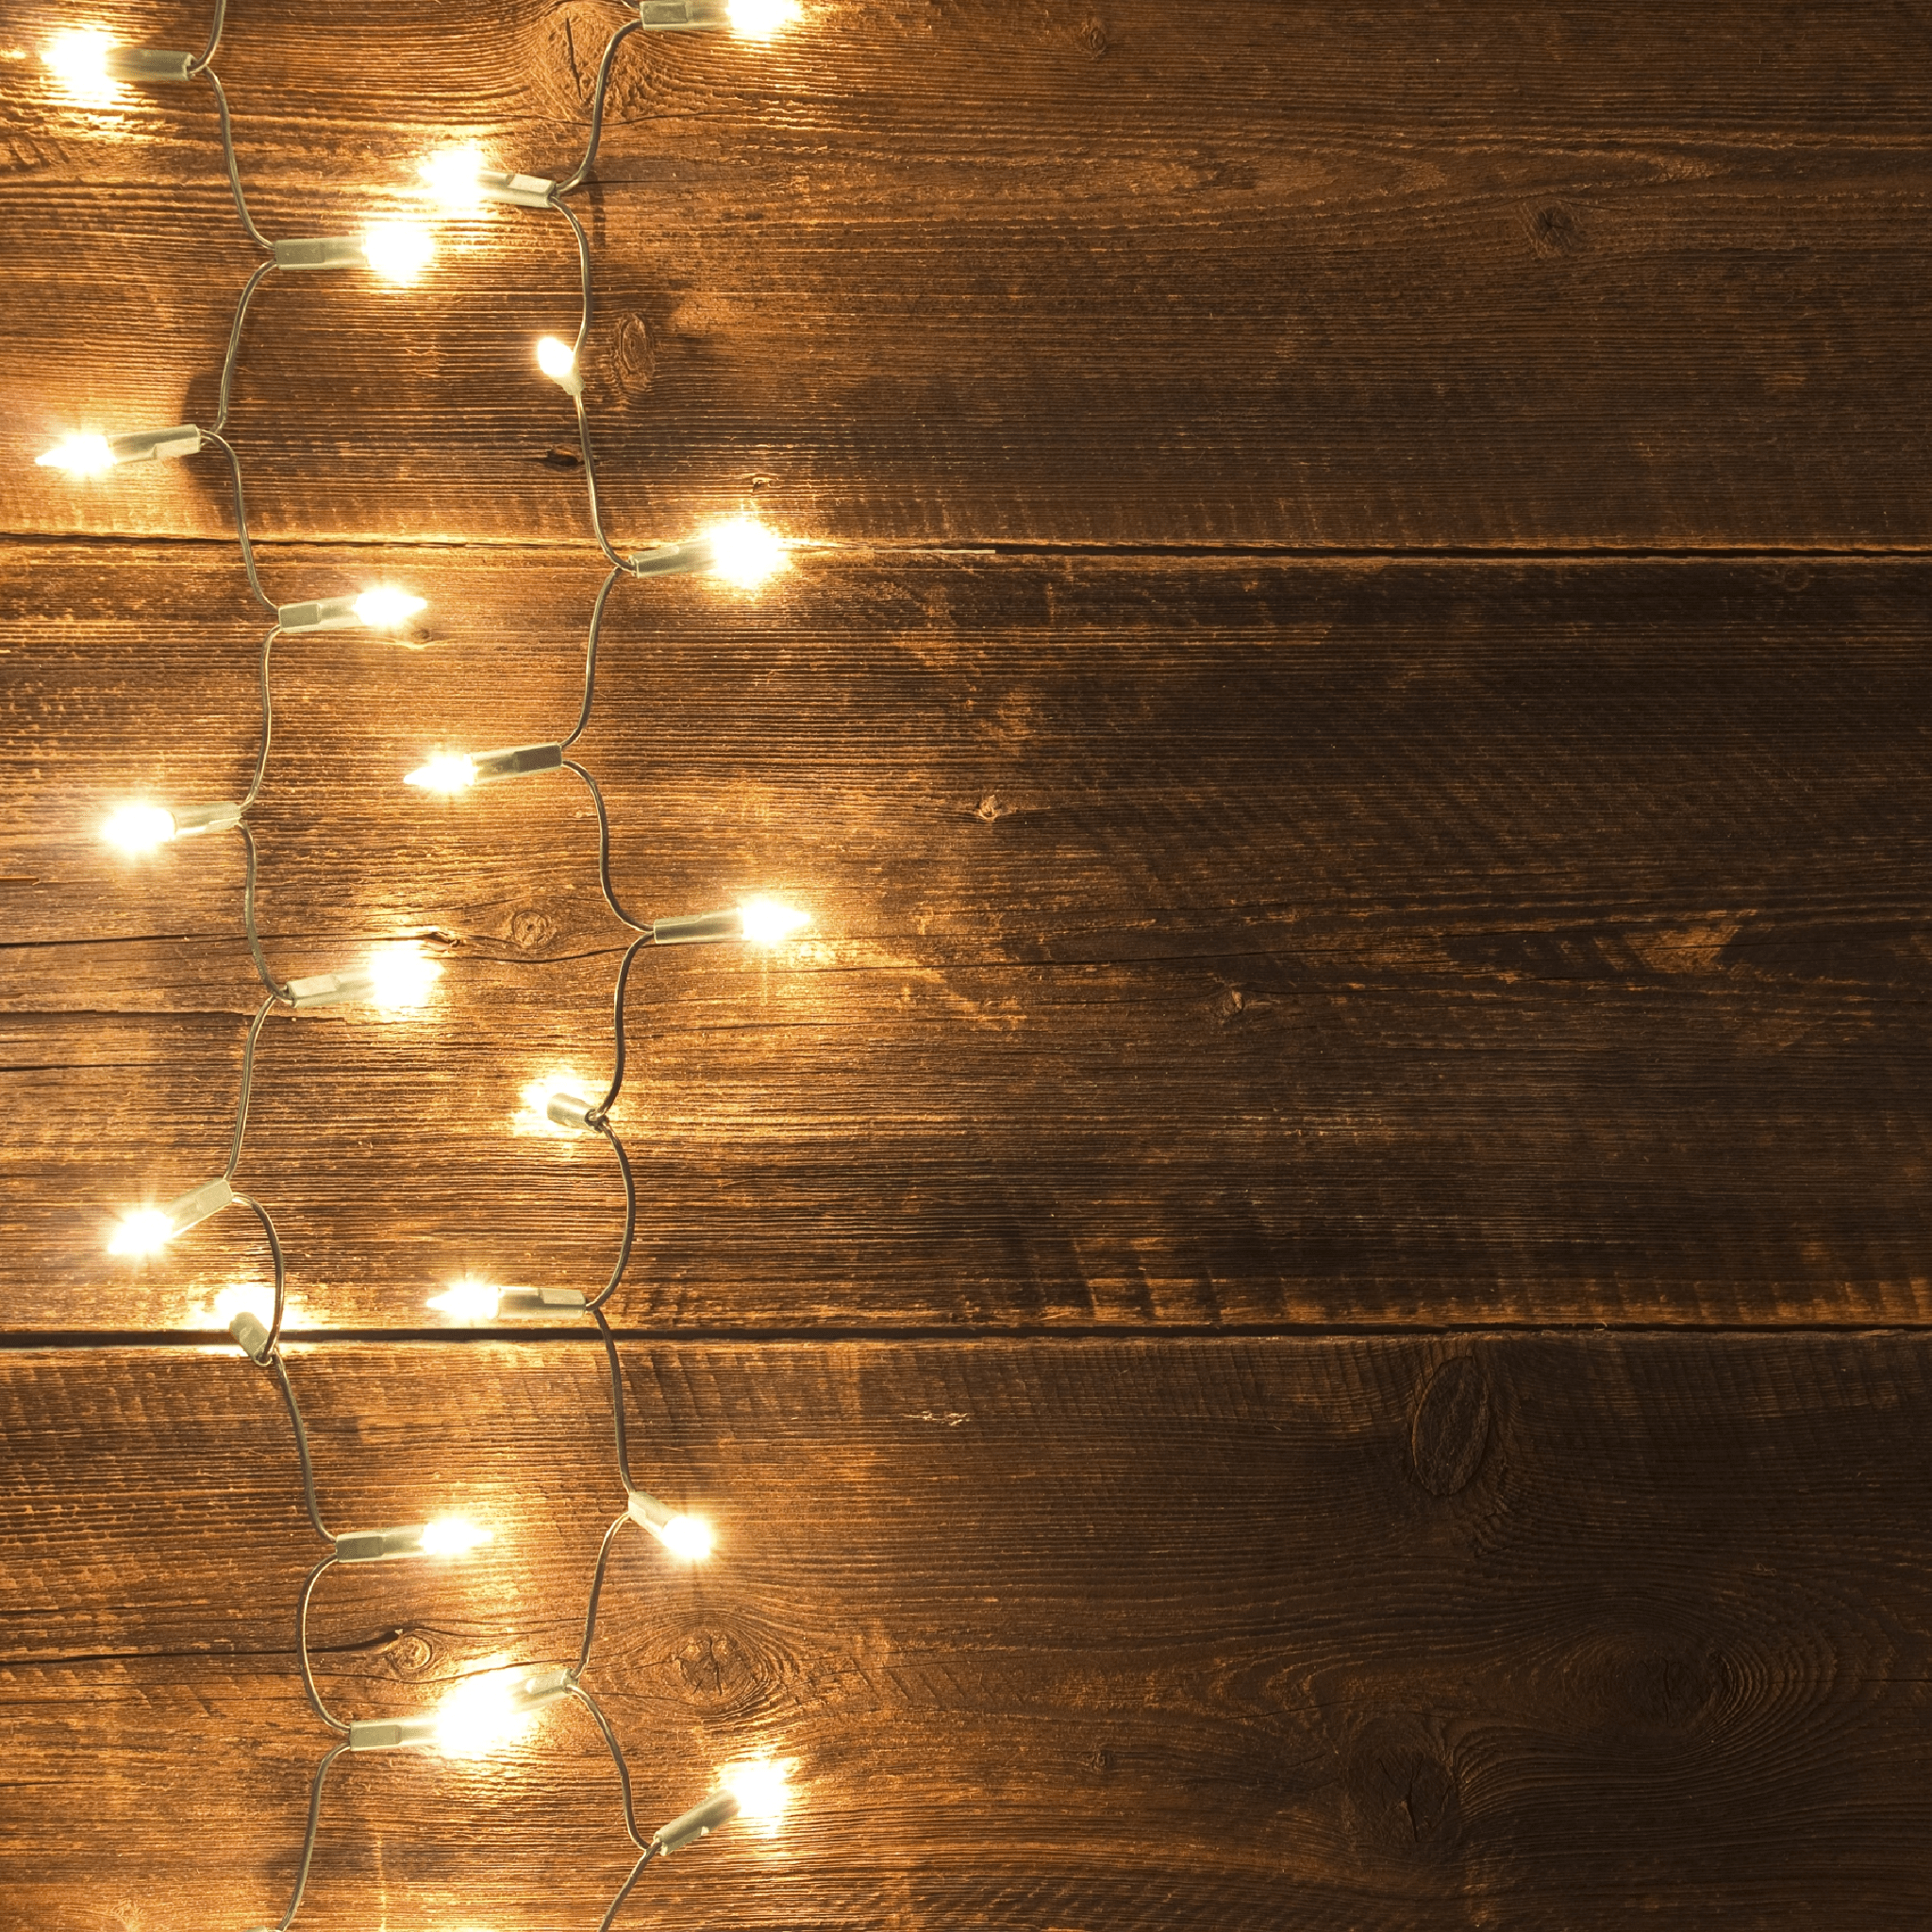 2048x2048 Đèn trên tường gỗ - Nhấn để xem thêm ánh sáng sáng tạo trong bóng tối